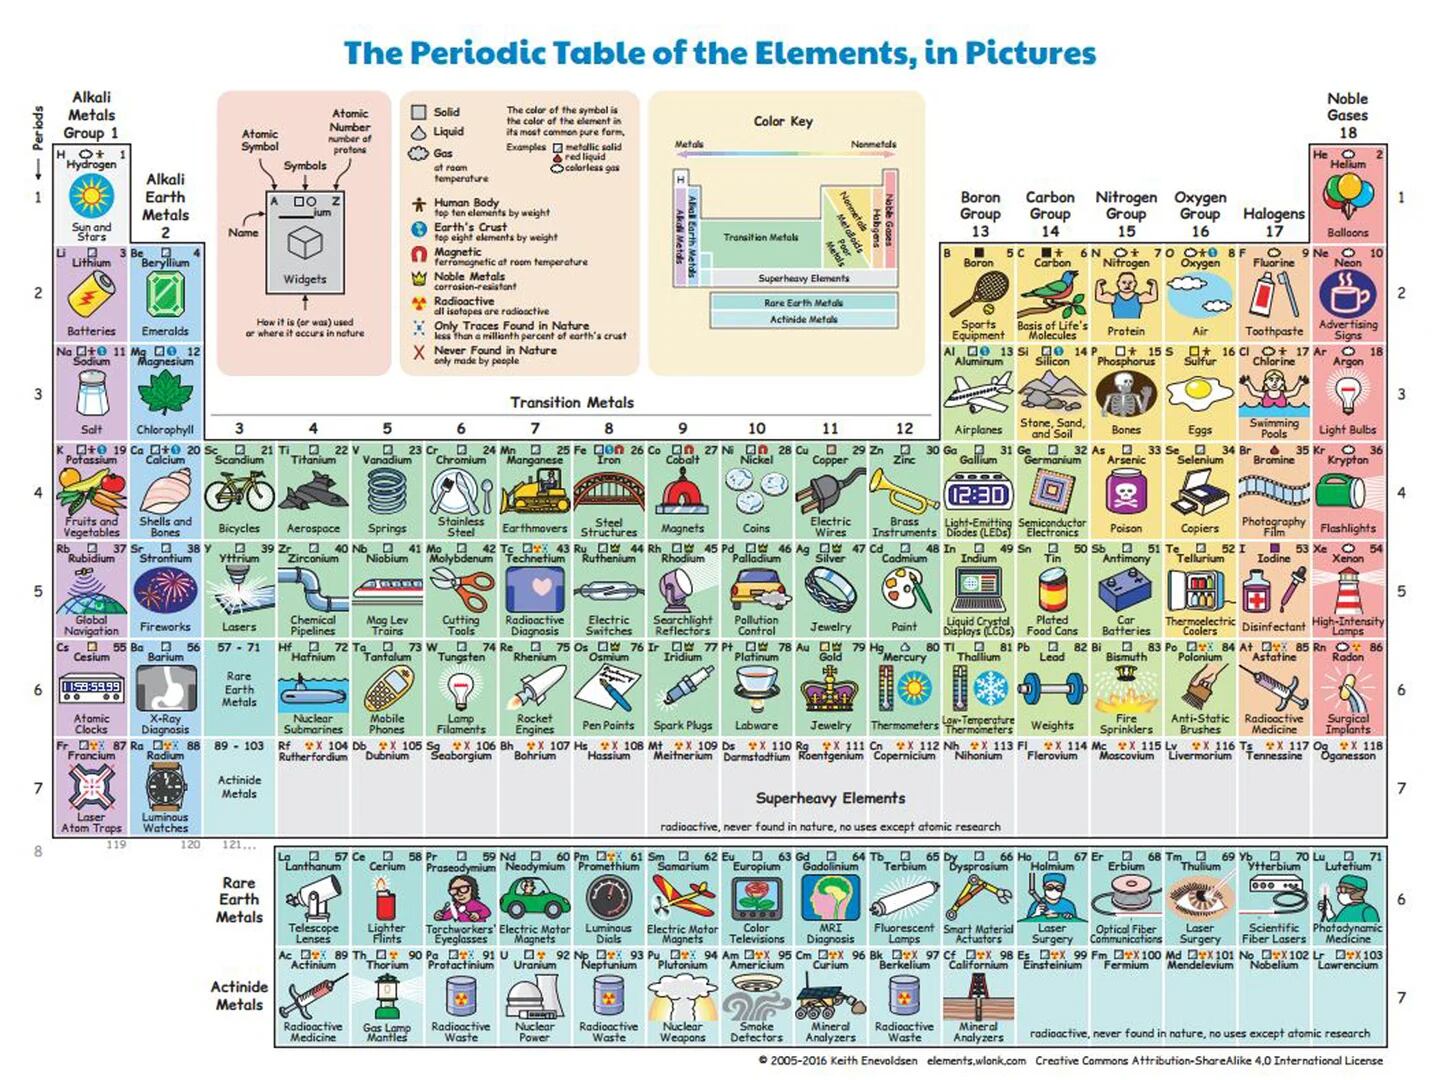 SDPlanet - Tabla periódica real ¡Increíble esta tabla periódica con elementos  reales! #Ciencia #Química Síguenos en SDPlanet 🌎